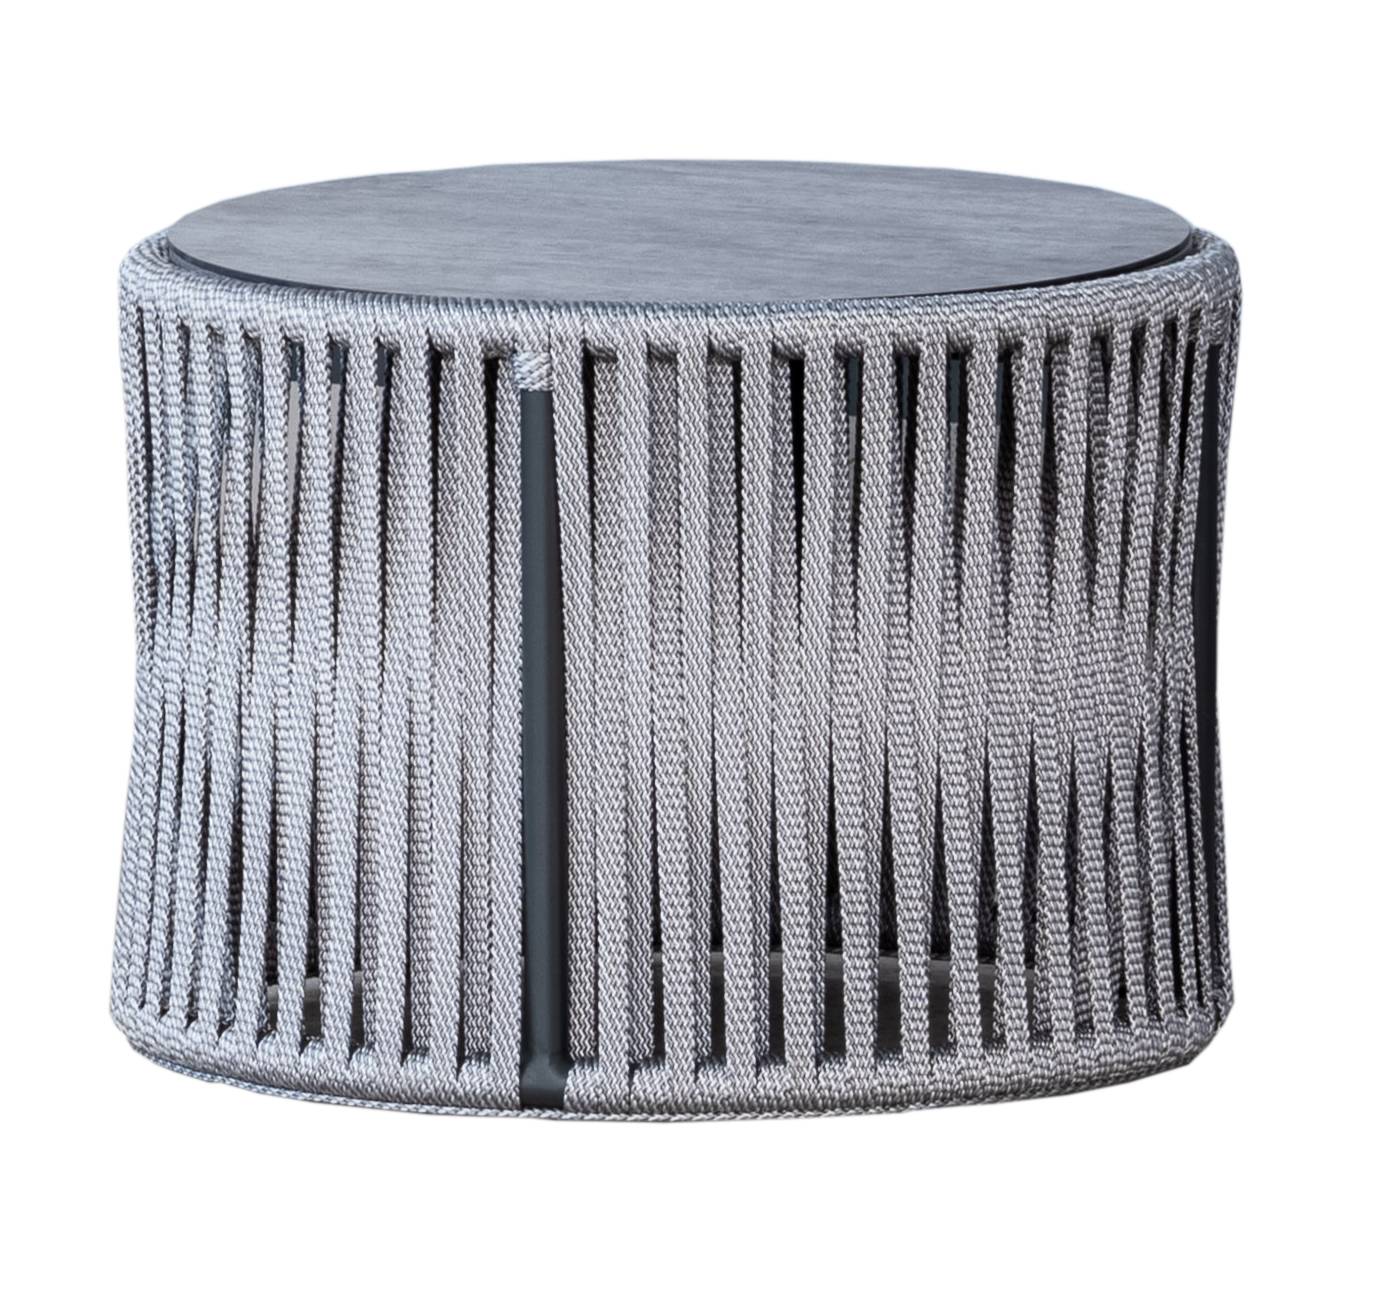 Set Cuerda Yina-8 - Conjunto aluminio color antracita y cuerda color gris: 1 sofá de 3 plazas + 2 sillones + 1 mesa de centro.